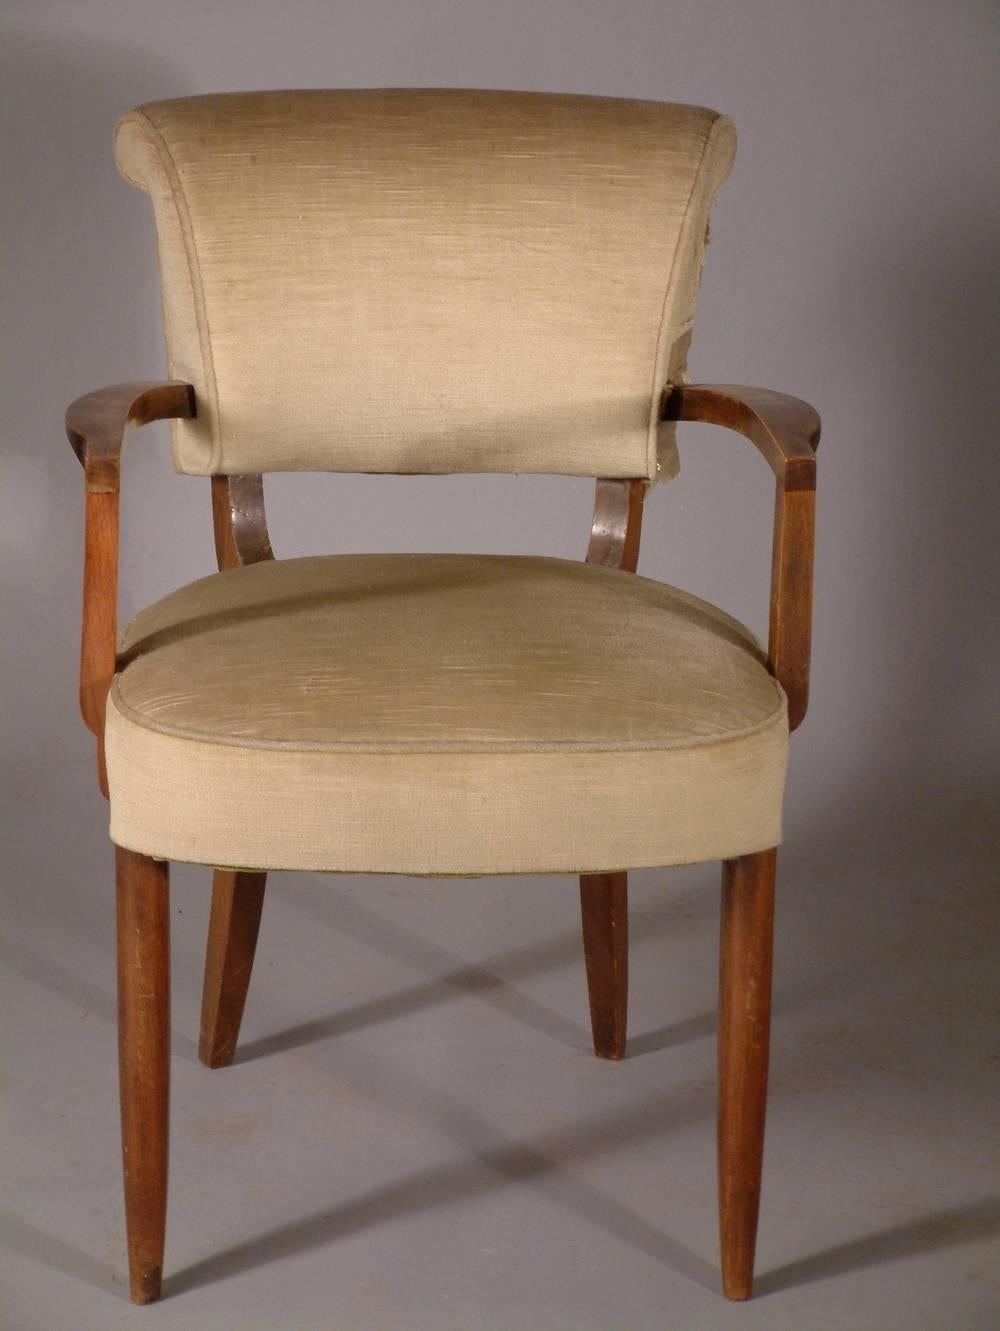 Paire de fauteuils Art déco français par Jules Leleu, vers 1935.

Veuillez noter que ces chaises ne sont pas restaurées sur les photographies.

Quatre disponibles. Le prix est fixé par paire.

JULES-EMILE LELEU

(1883-1961)

Sculpteur et designer